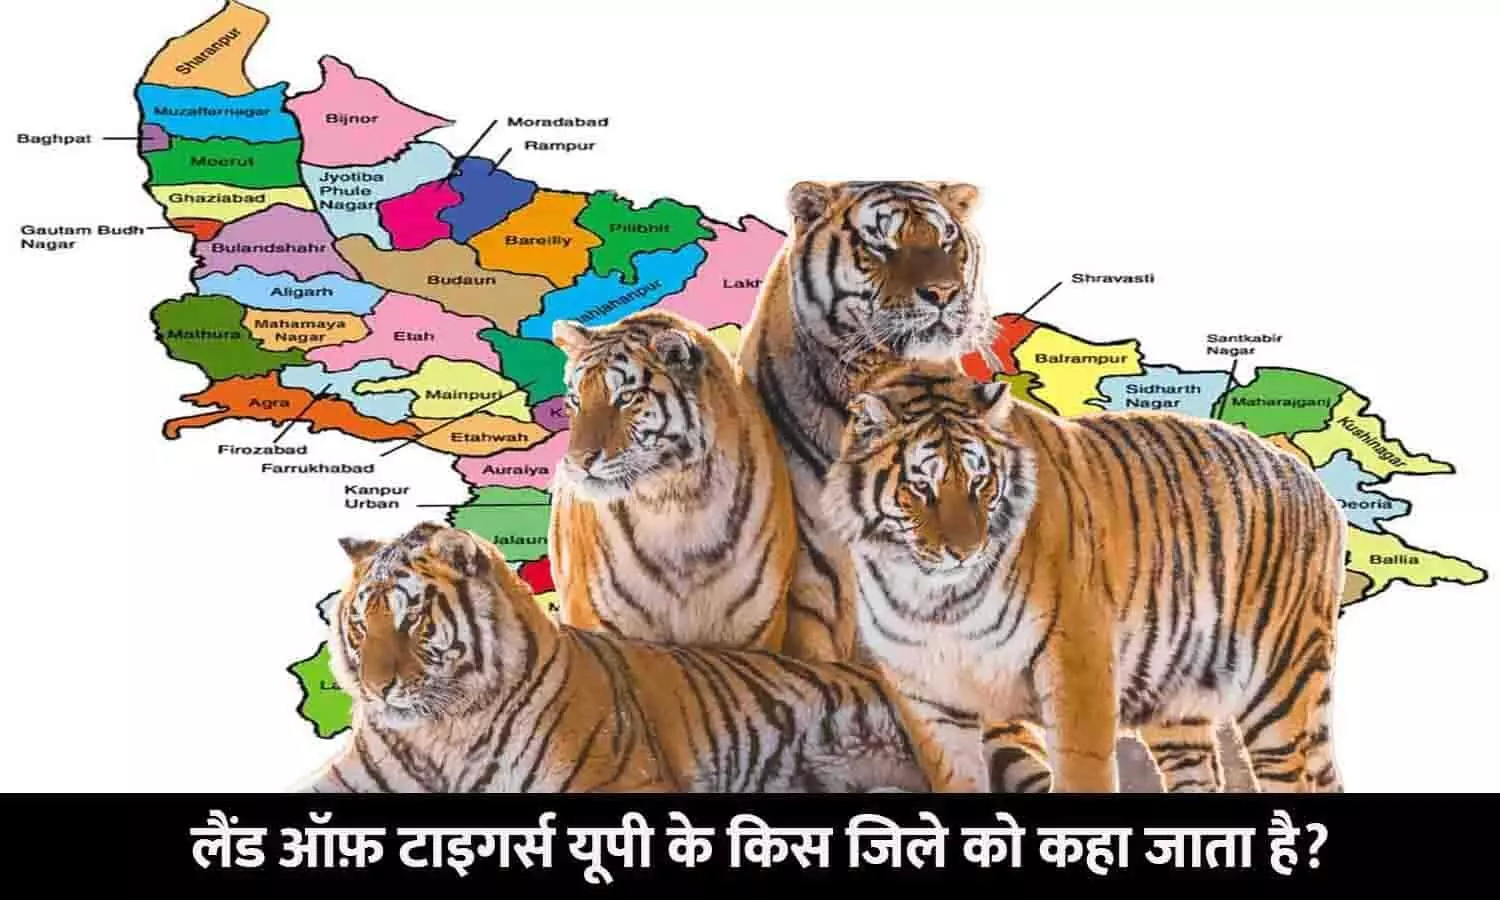 UP Ke Kis Jile Ko Land of Tigers Kaha Jata Hai: लैंड ऑफ़ टाइगर्स यूपी के किस जिले को कहा जाता है?